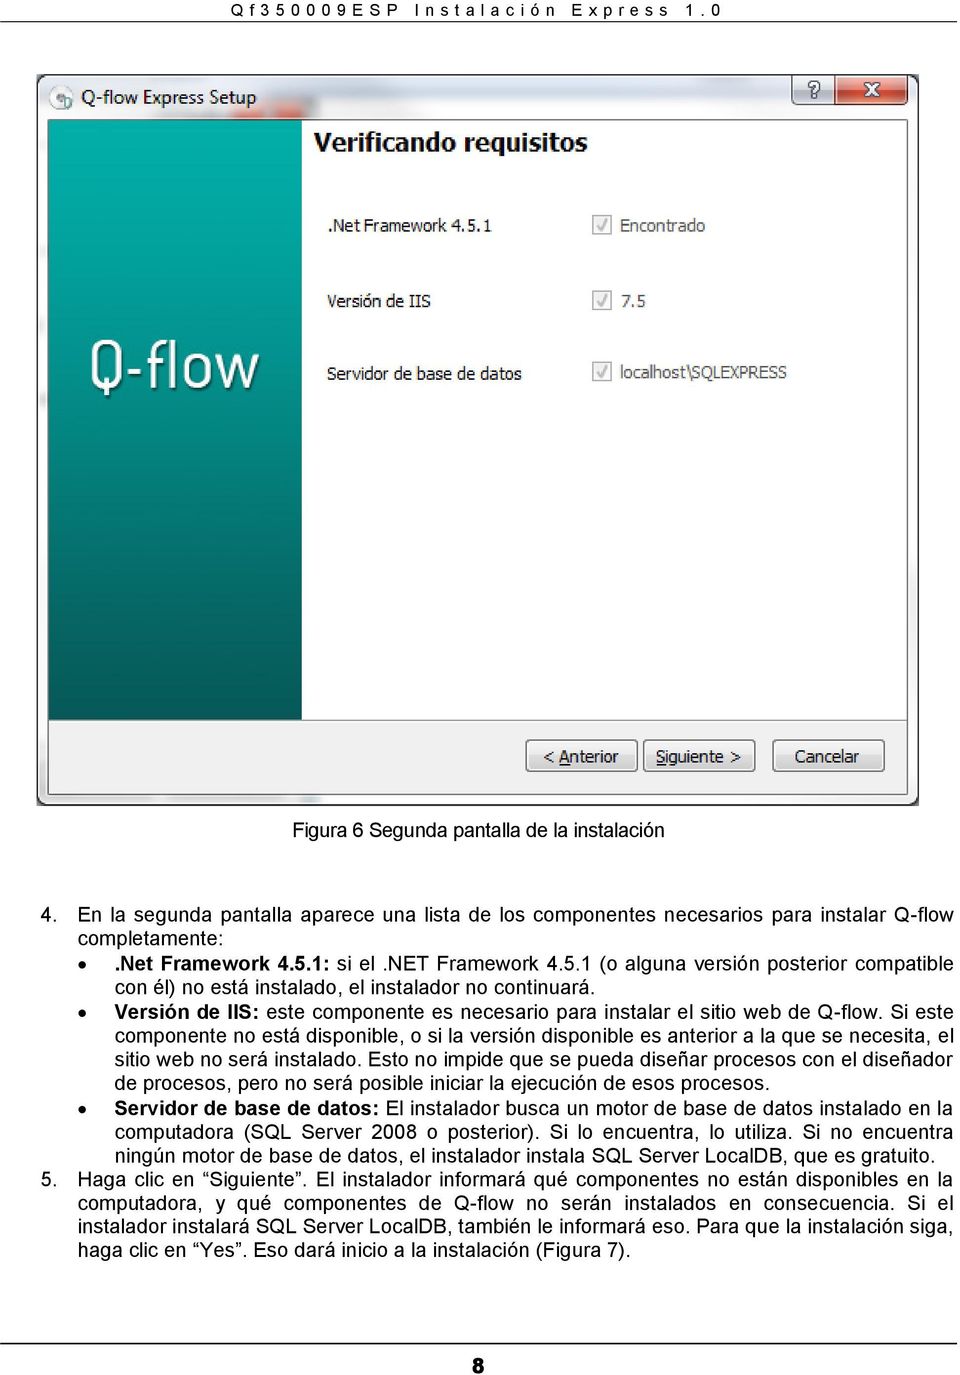 Versión de IIS: este componente es necesario para instalar el sitio web de Q-flow.